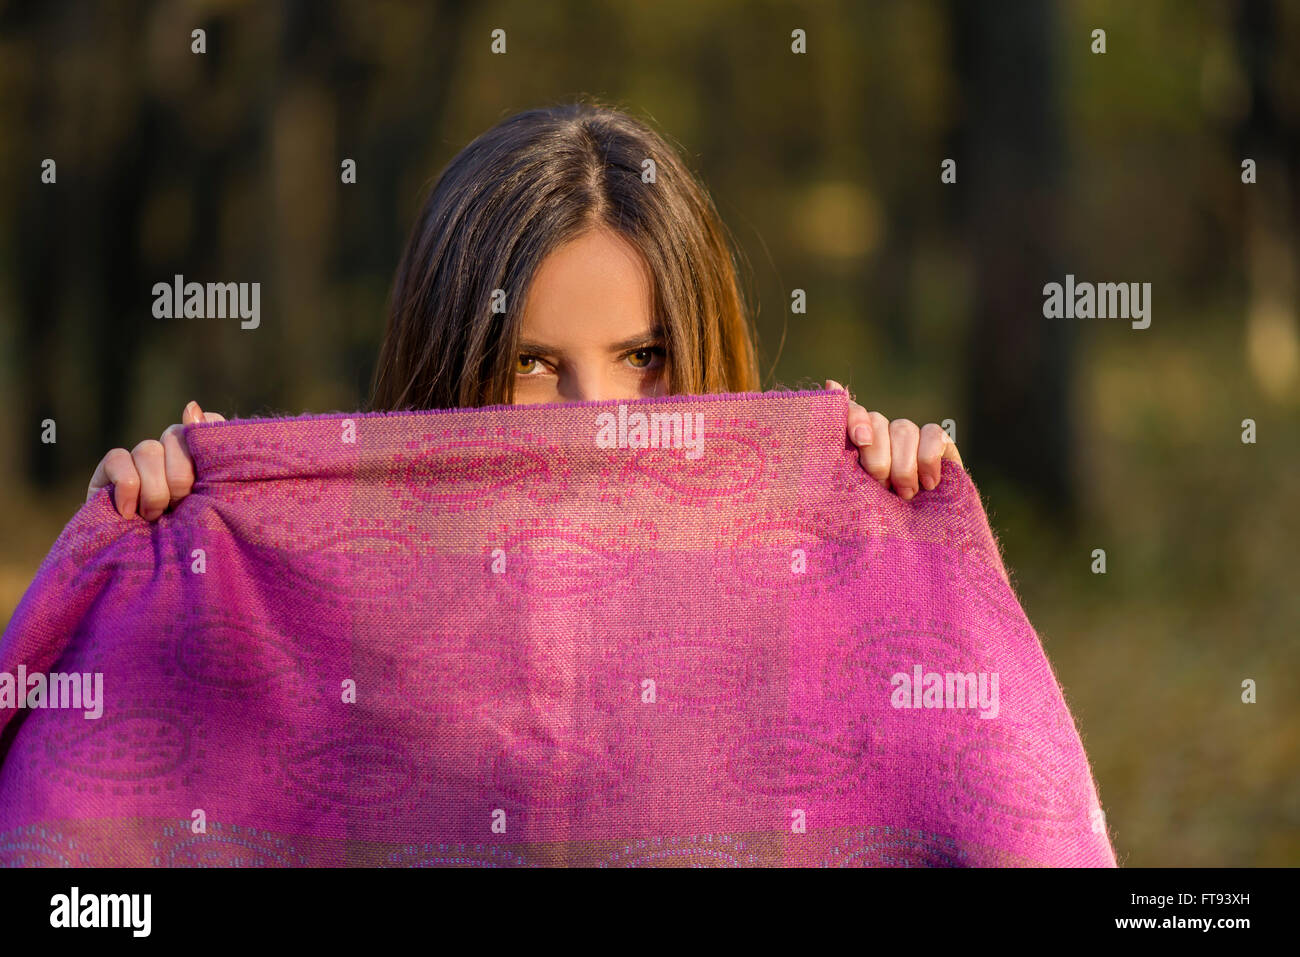 Hinter lila Schal. Hübsche Teenager Mädchen mit braunen Augen bedeckt ihr Gesicht mit dem lila Schal im Nachmittag Wald. Stockfoto